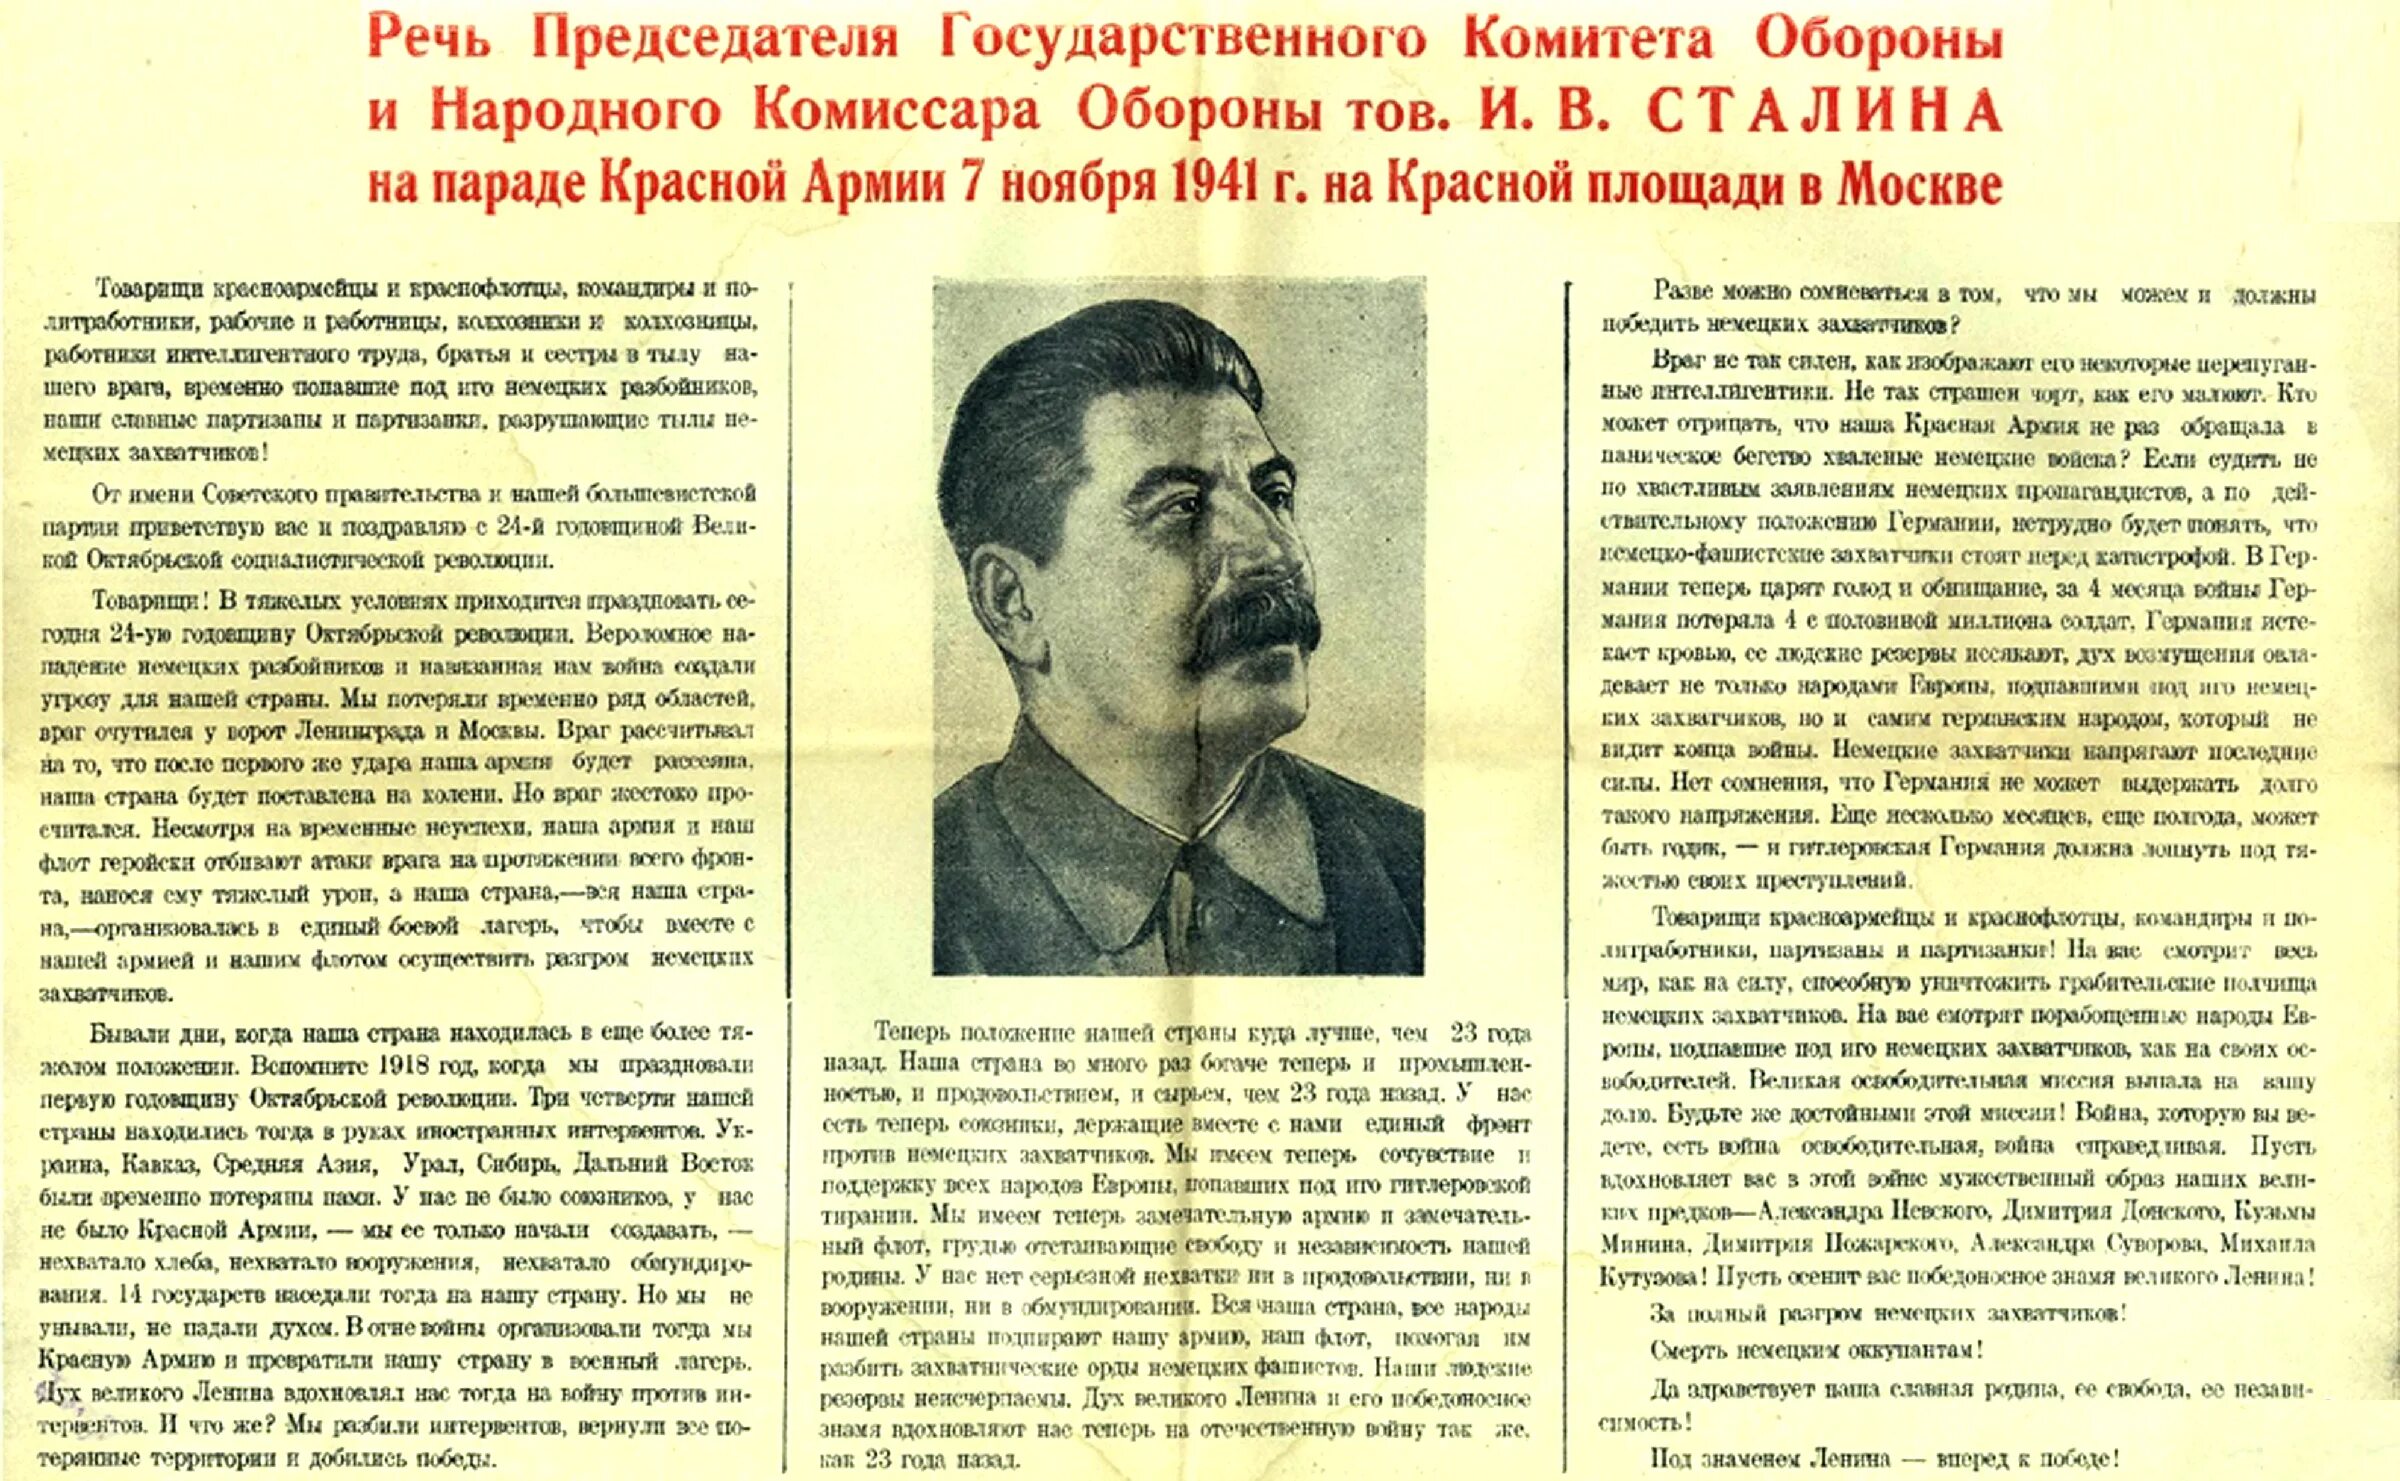 Обращение сталина по радио к советскому народу. Речь Сталина на параде 7 ноября 1941. Парад 7 ноября 1941 года в Москве на красной площади речь Сталина. Сталин 7 ноября 1941 года речь. Выступление Сталина в 1941 на красной площади.